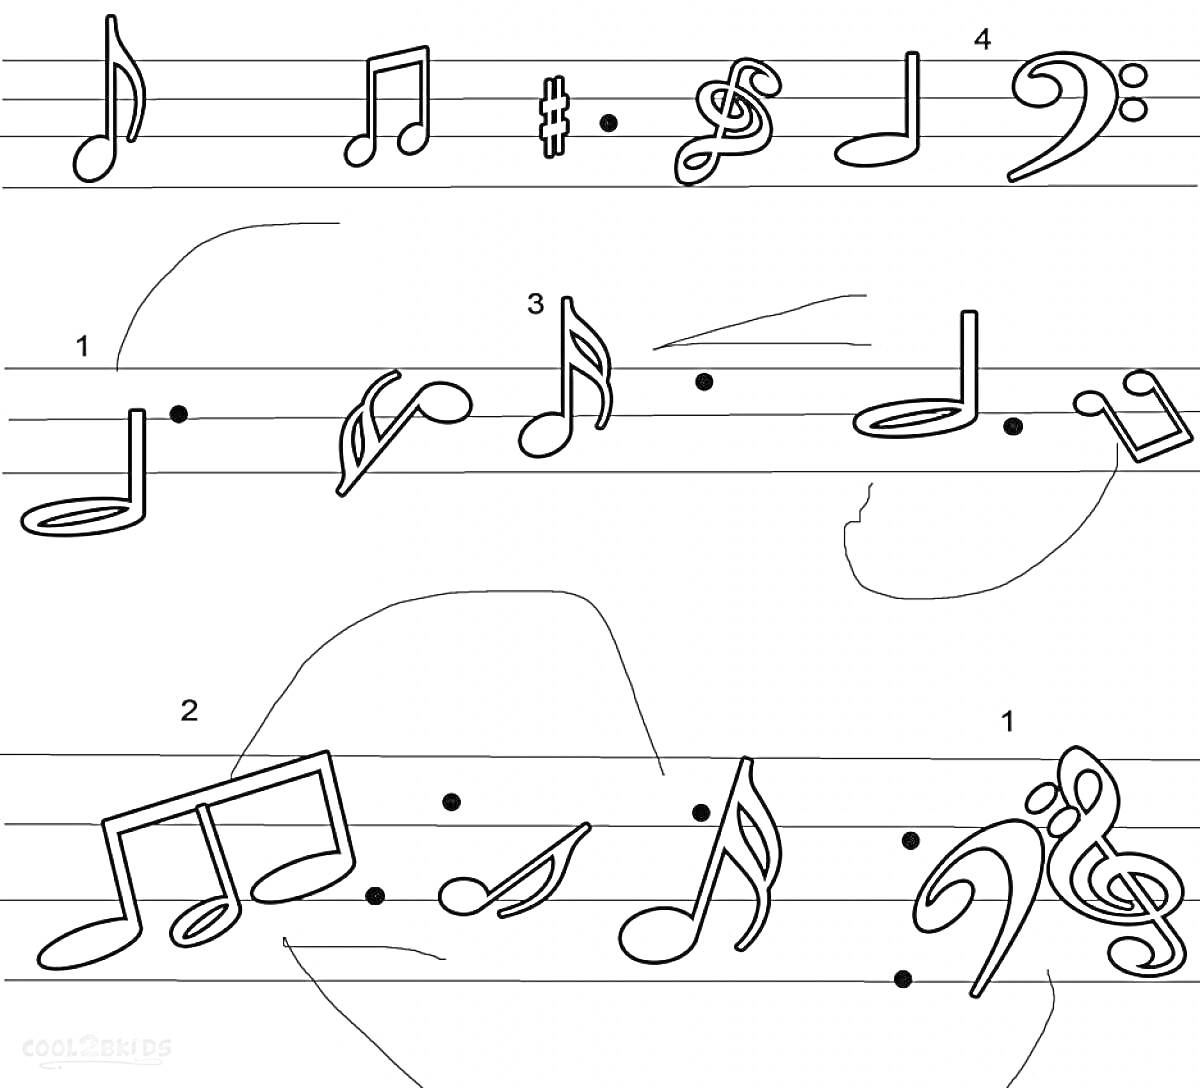 Музыкальные ноты и символы: восьмая нота, шестнадцатая нота, диез, скрипичный ключ, басовый ключ, восьмая связанная нота, четвертная нота, половинная нота, бемоль, нотная строка